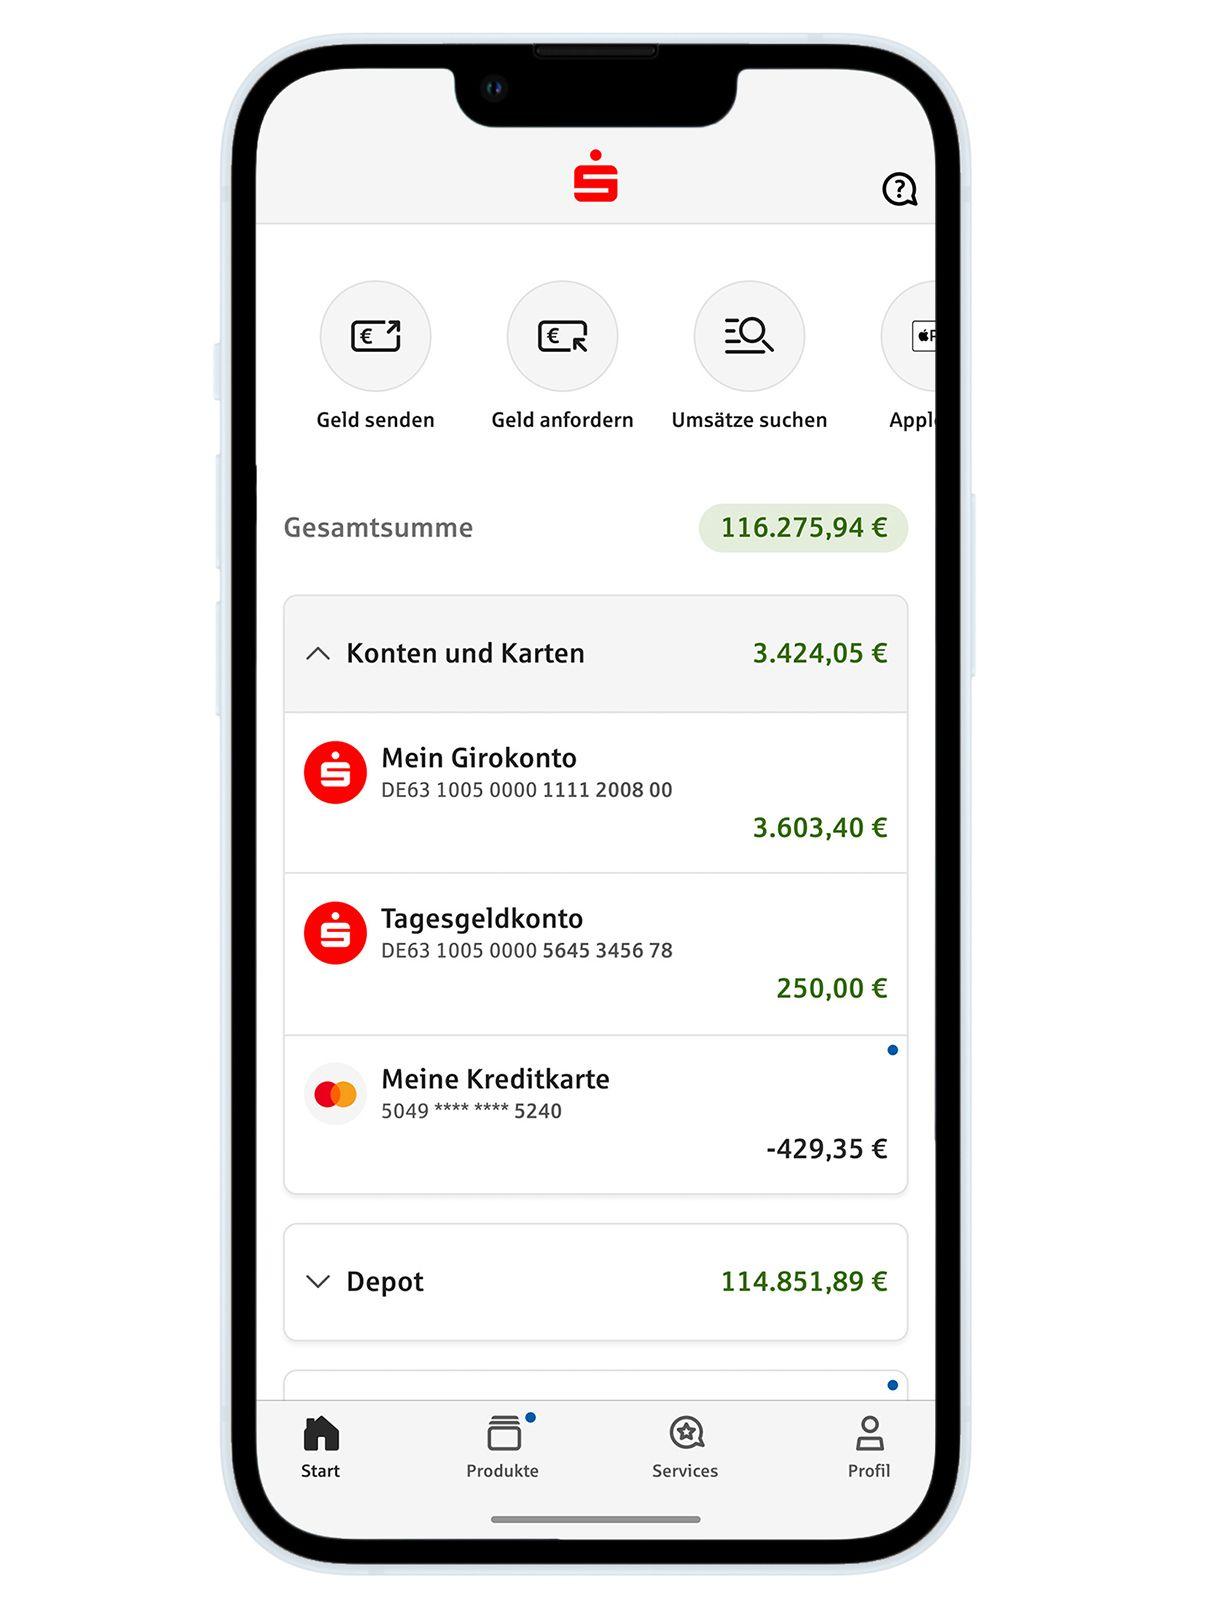 Ein freigestellter Smartphone-Bildschirm mit der Benutzeroberfläche der Sparkassen-App vor weißem Hintergrund. Angezeigt wird die Seite mit den Konten und Karten und dem Kontostand.